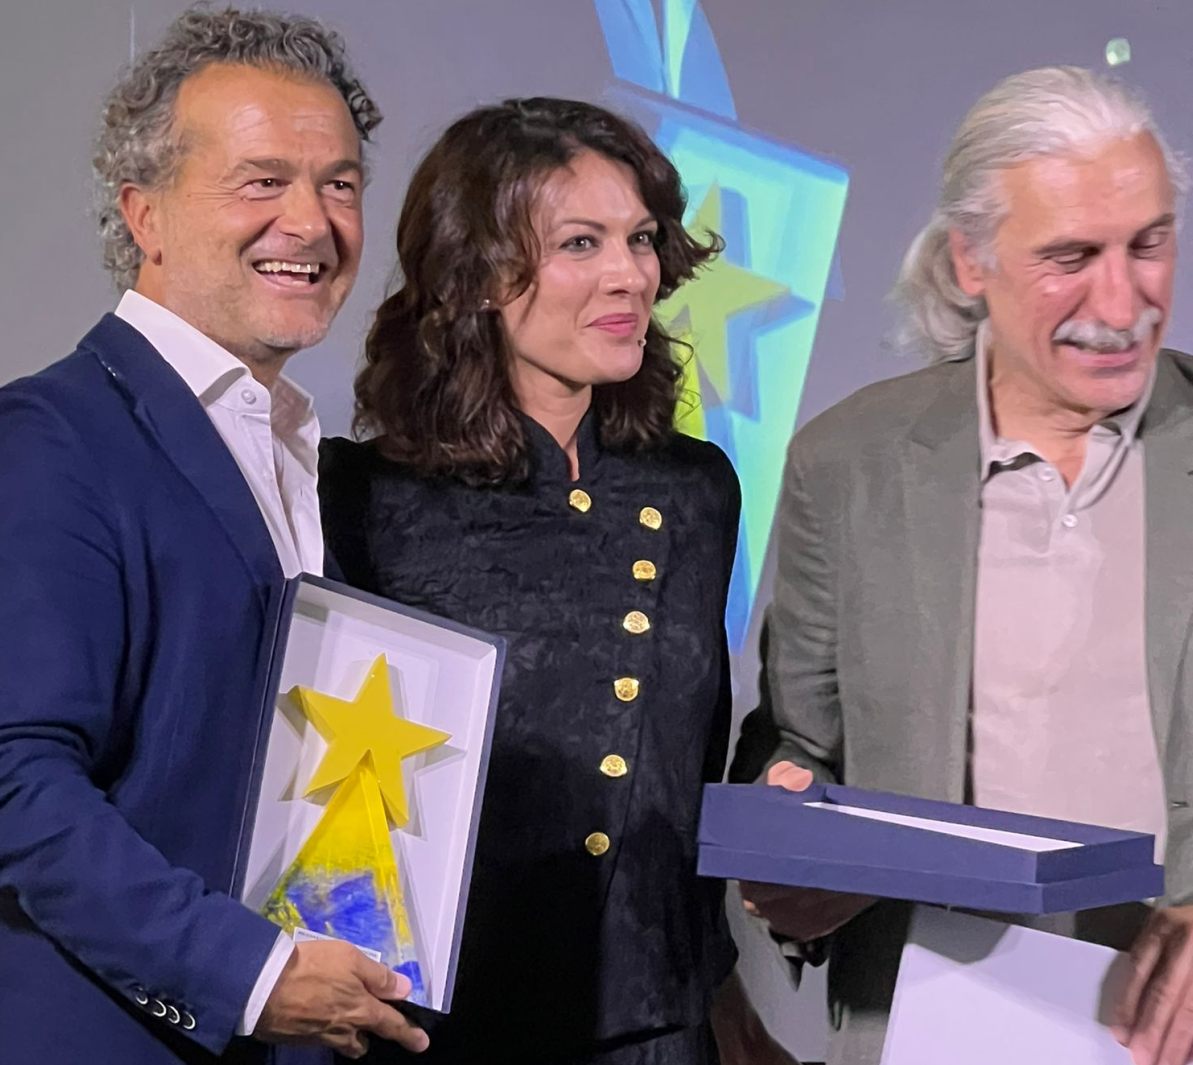 Al Consorzio Parmigiano Reggiano il premio Mediastars per “Gli Amigos”